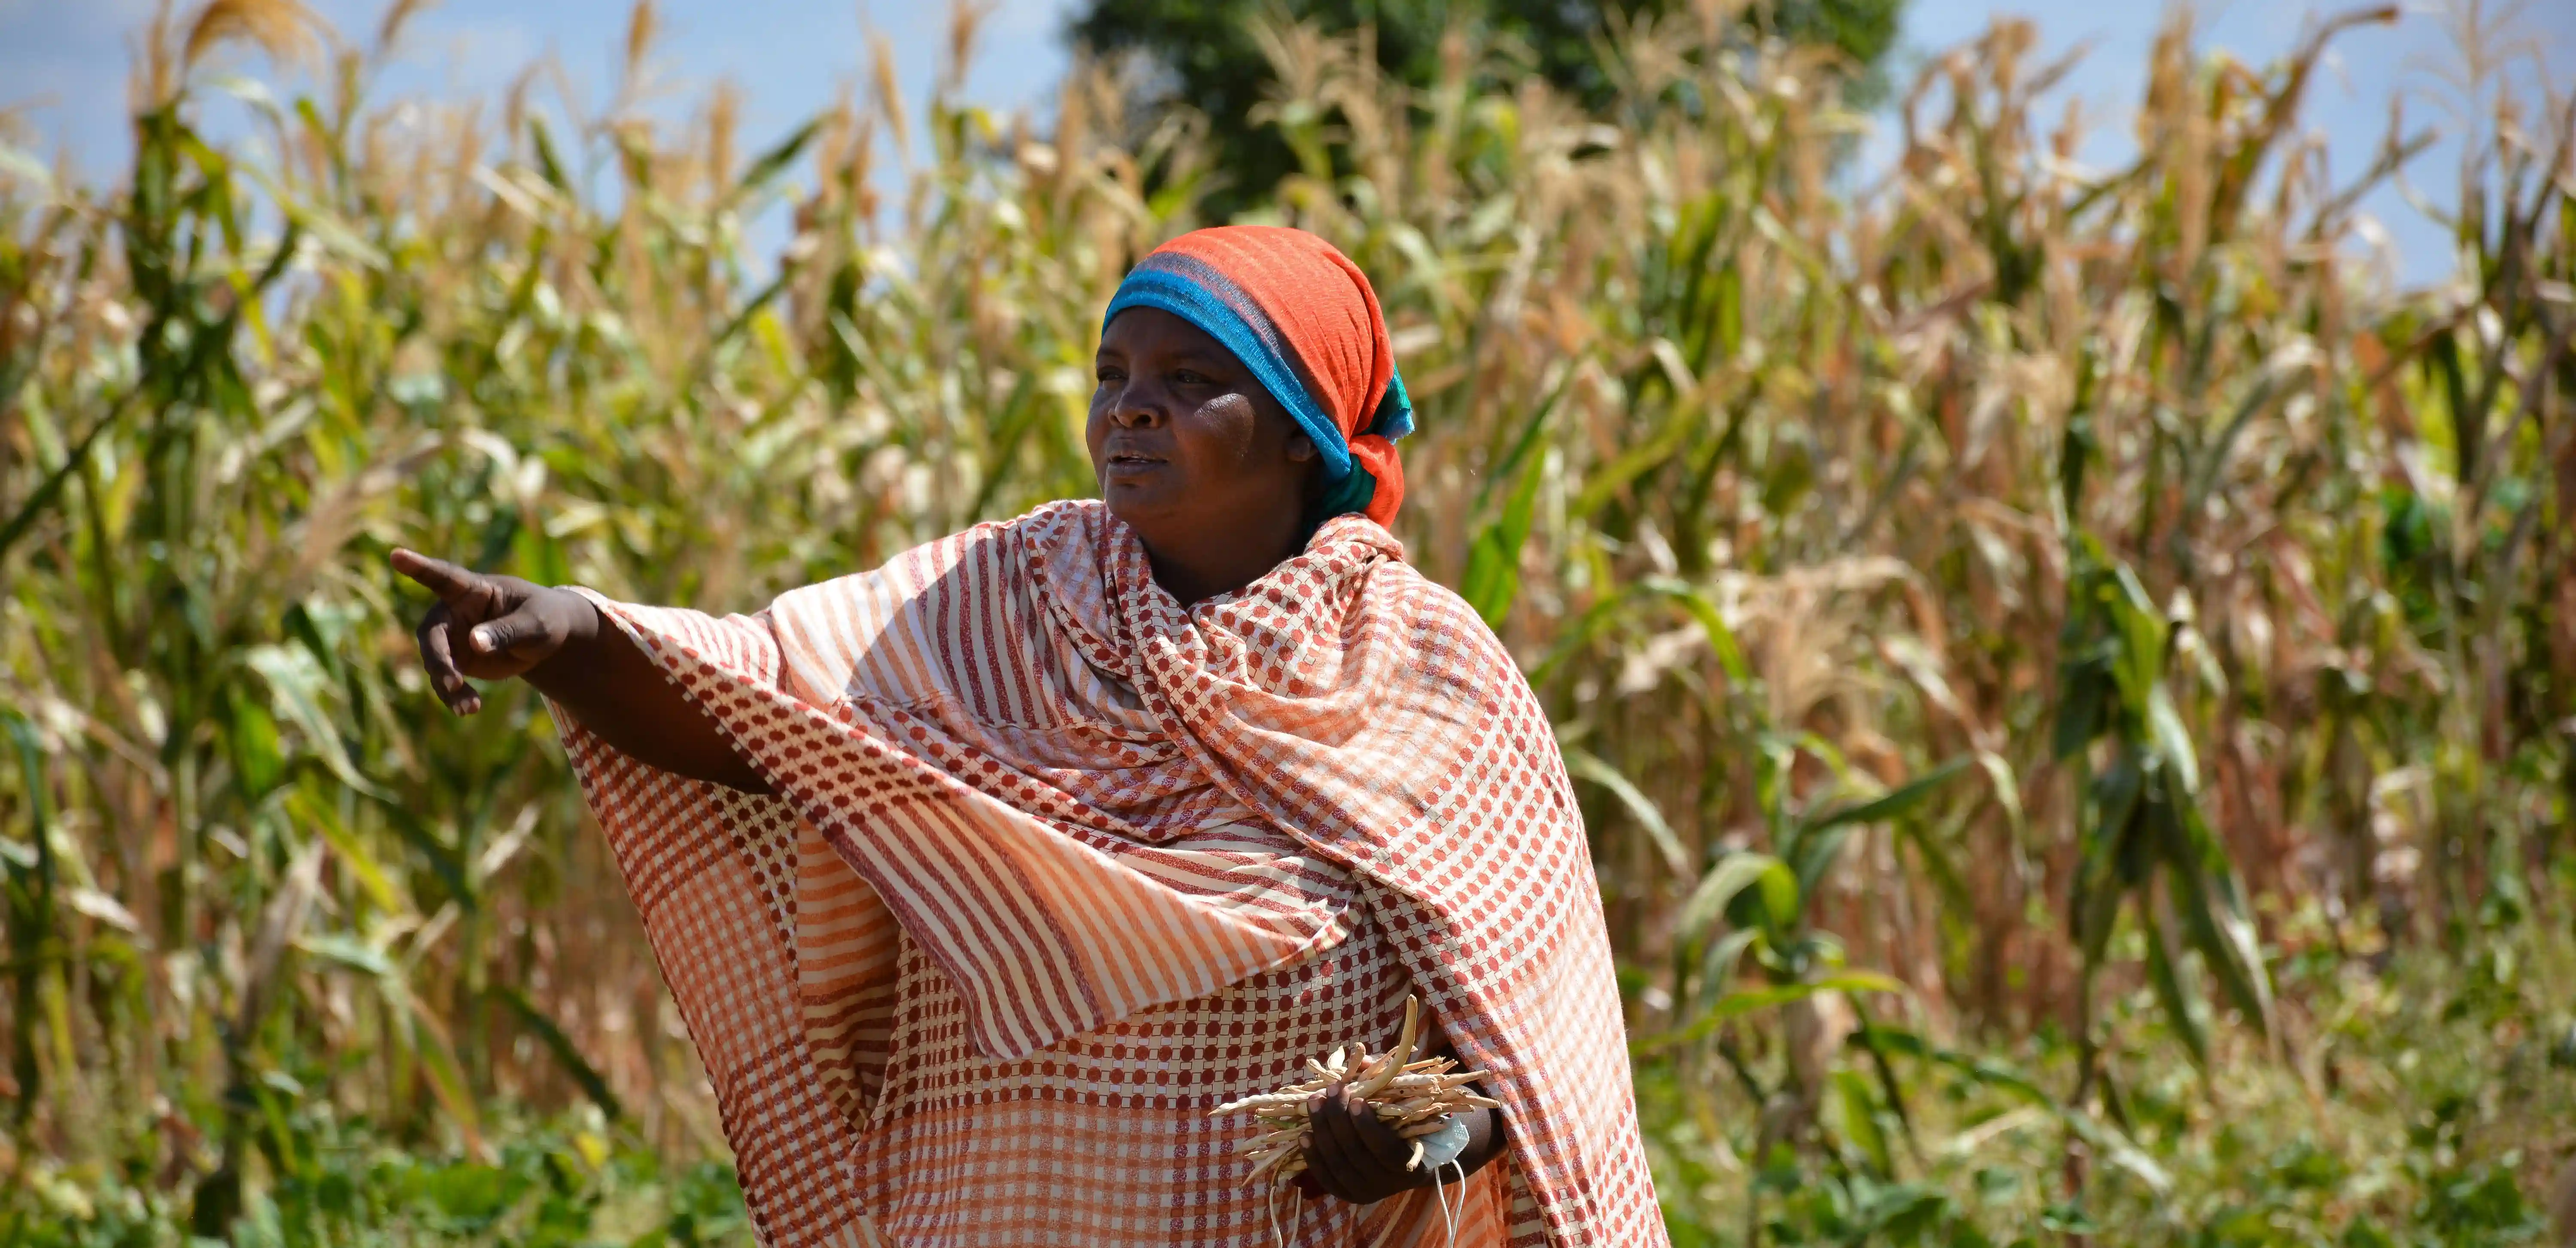 A woman farmer in Kenya